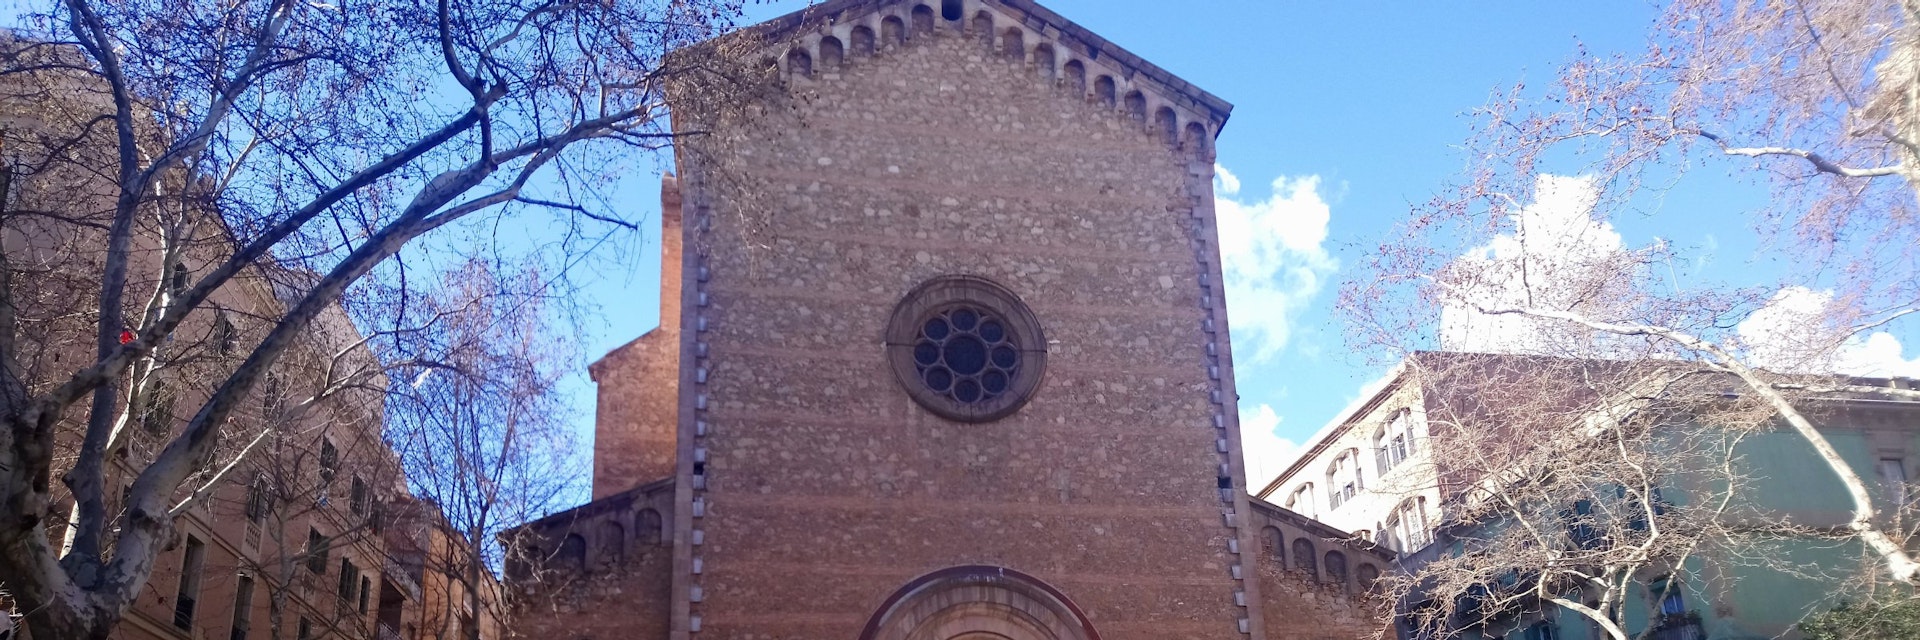 Exterior of Església de Sant Joan